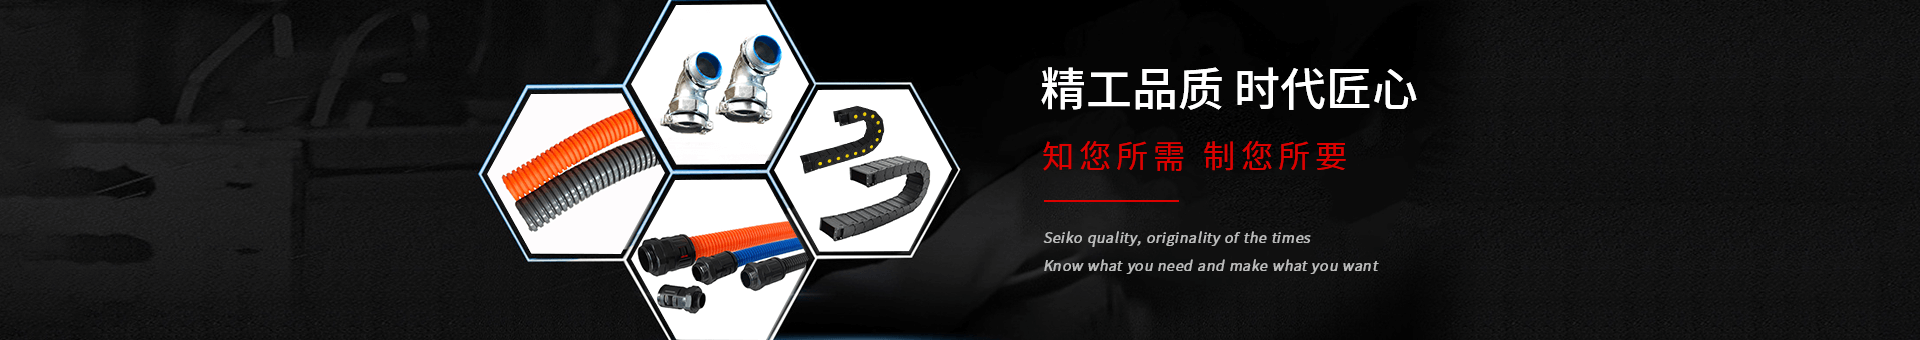 天博电竞官网(中国)有限公司机械banner